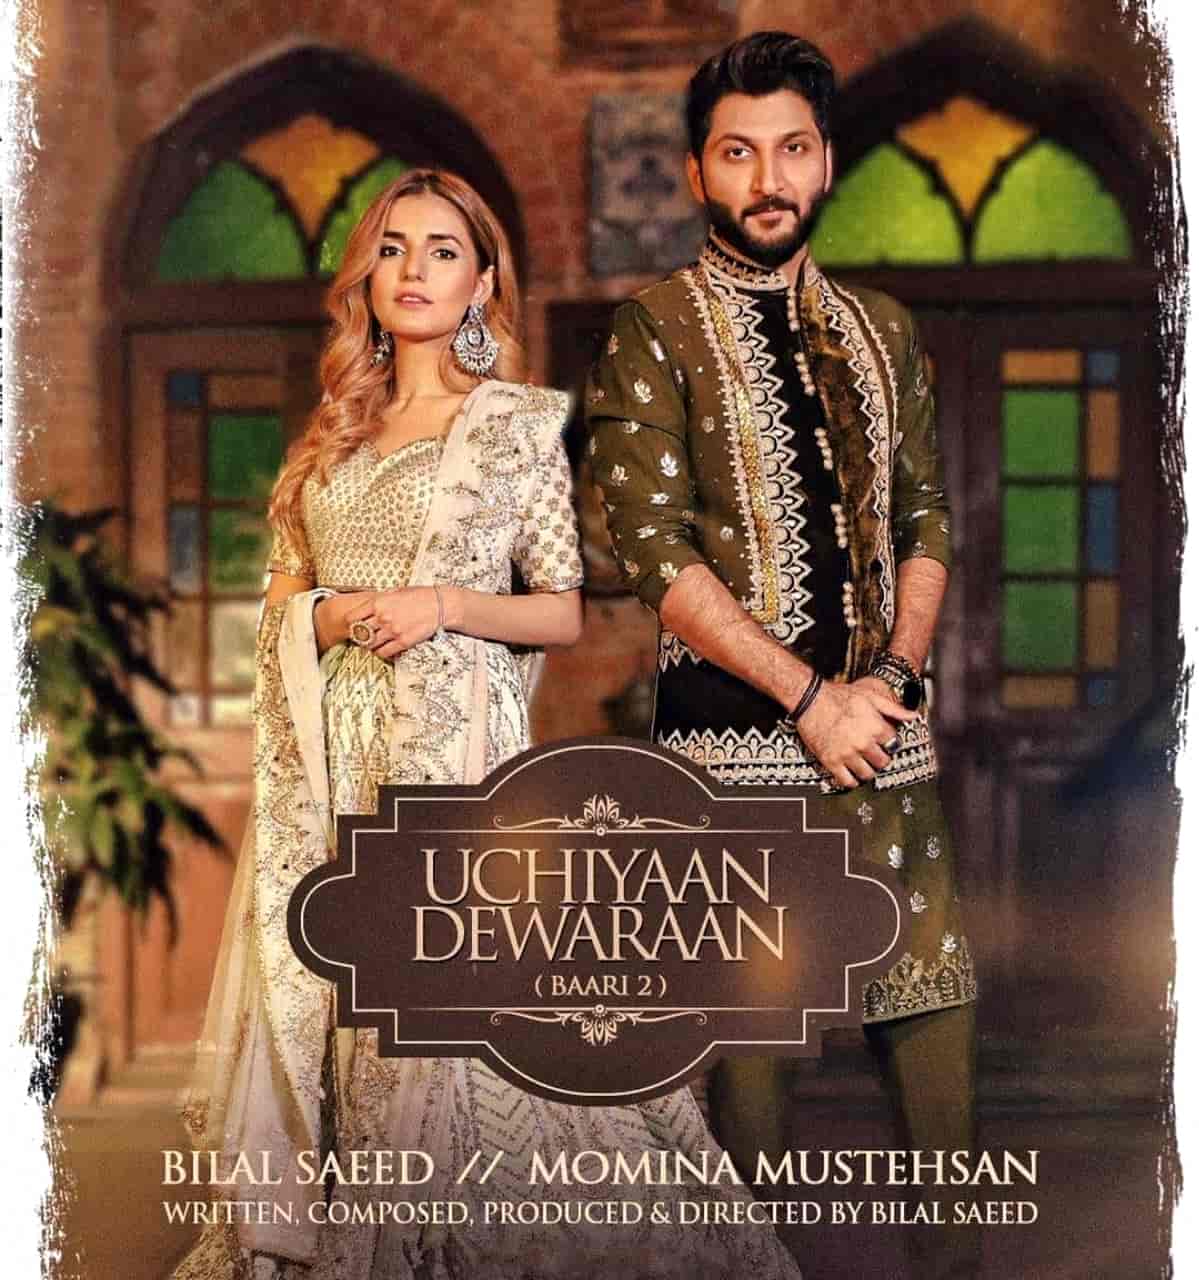 Uchiyaan Dewaraan Punjabi Song Image Features Bilal Saeed and Momina Mustehsan